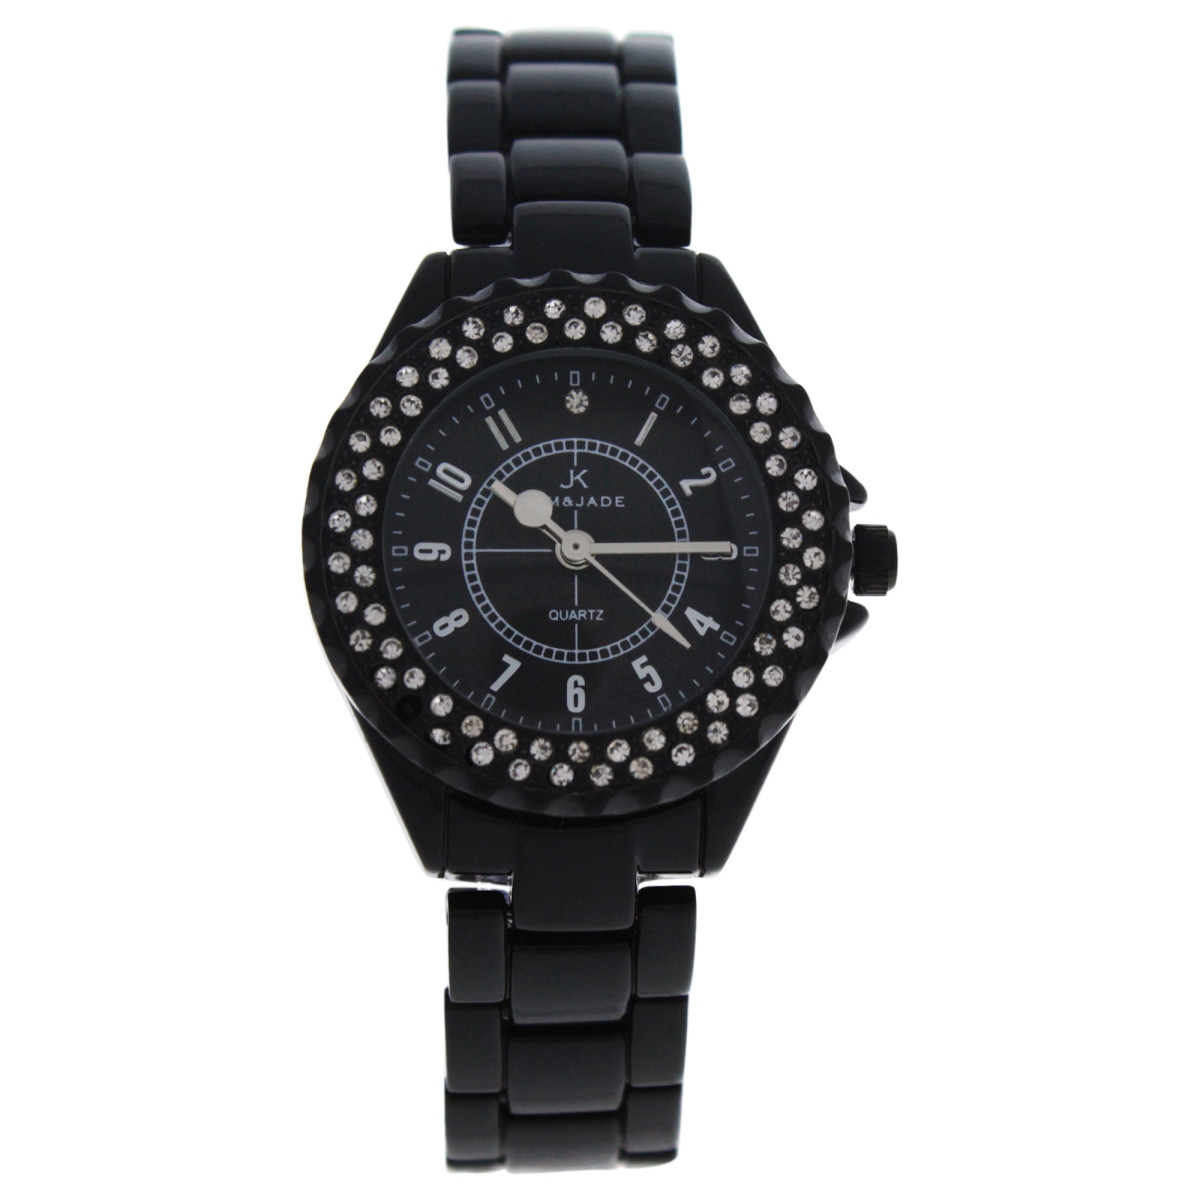 W-wat-1525 Black Stainless Steel Bracelet Watch For Women - 2033l-bb